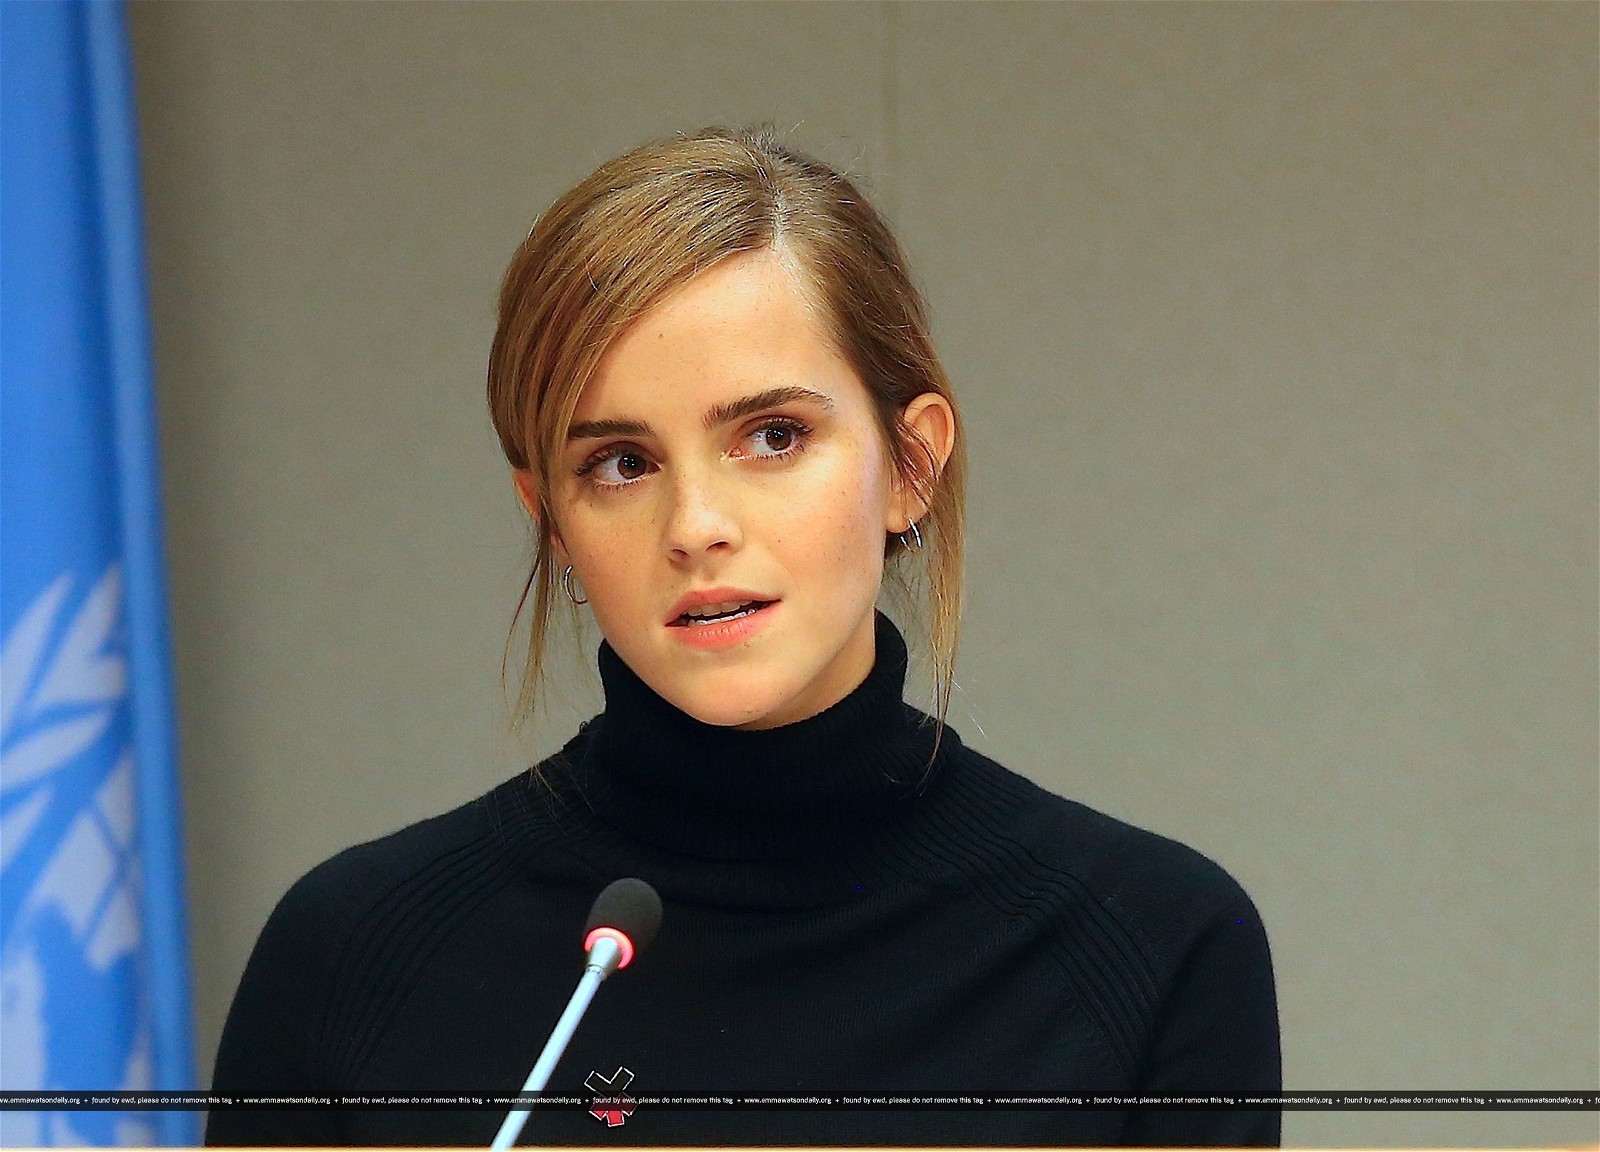 Emma Watson's speech at the UN